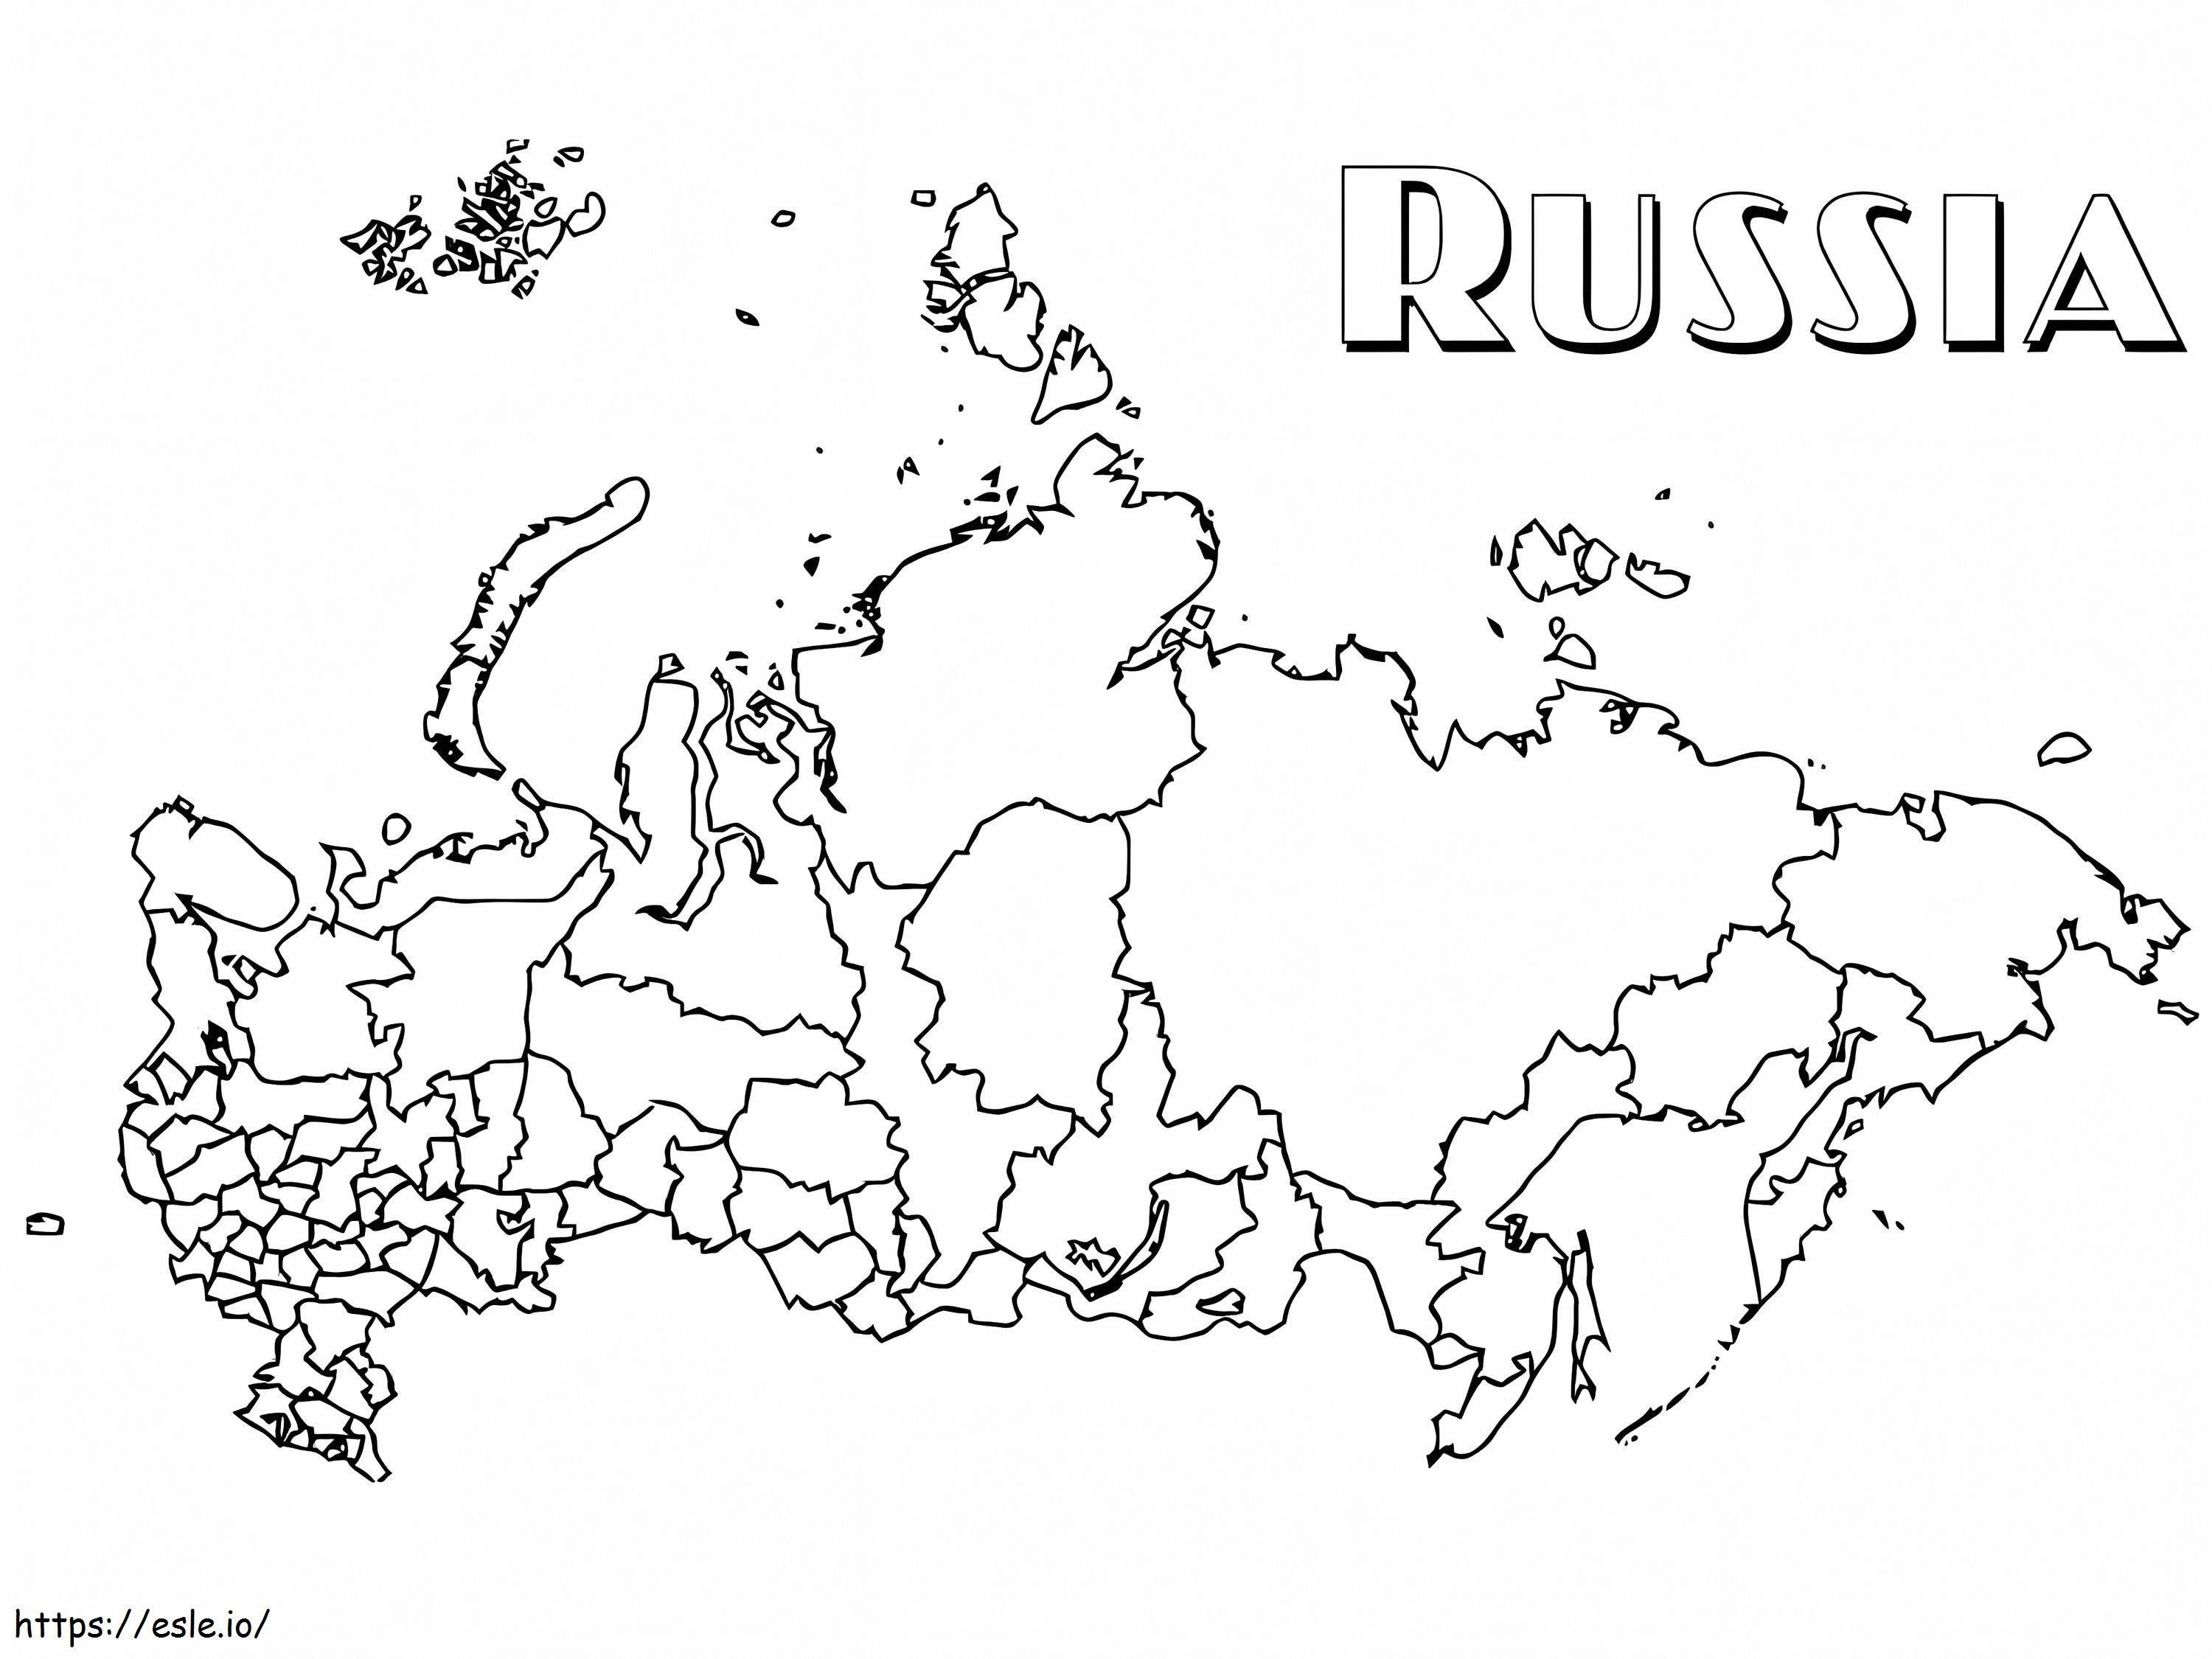 Rusland kaart kleurplaat kleurplaat